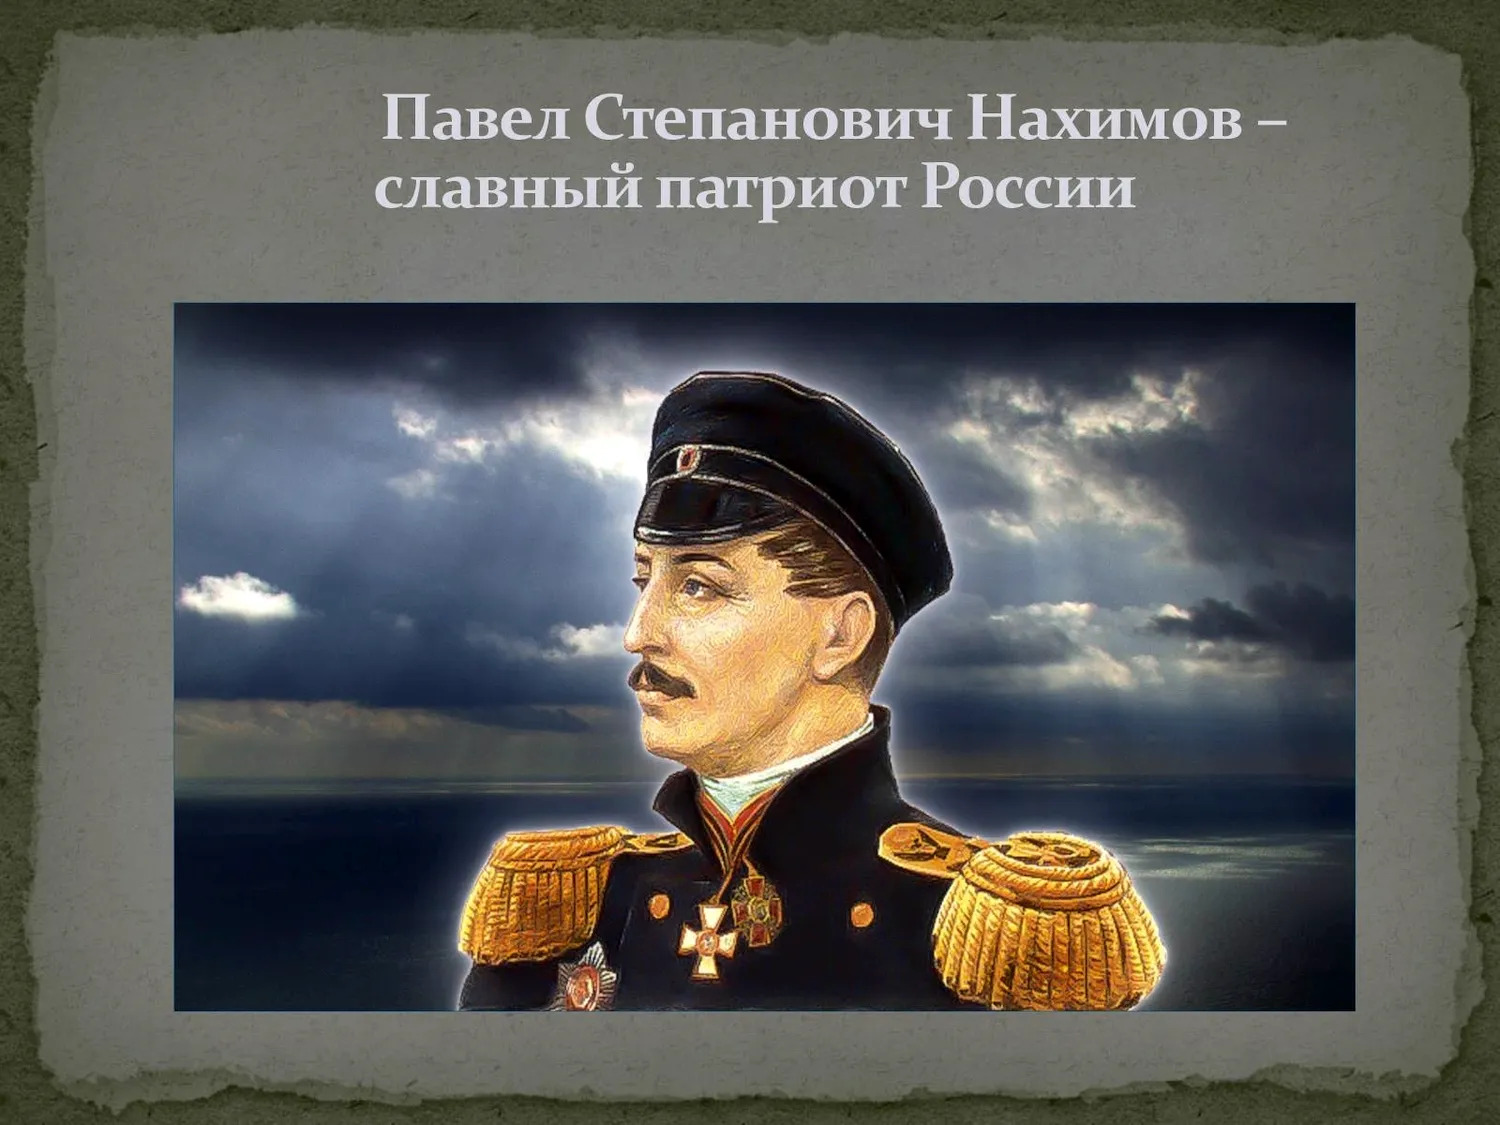 Вице-Адмирал Павел Степанович Нахимов